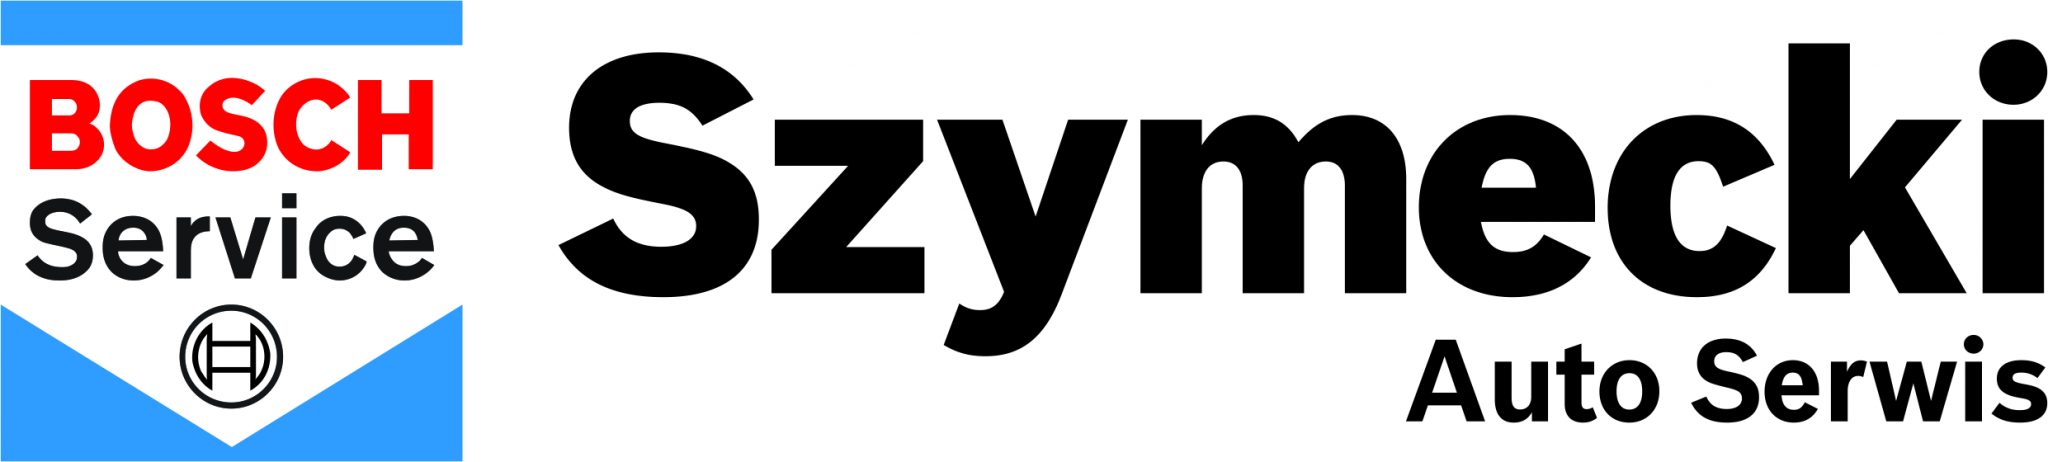 szymecki_logo2019